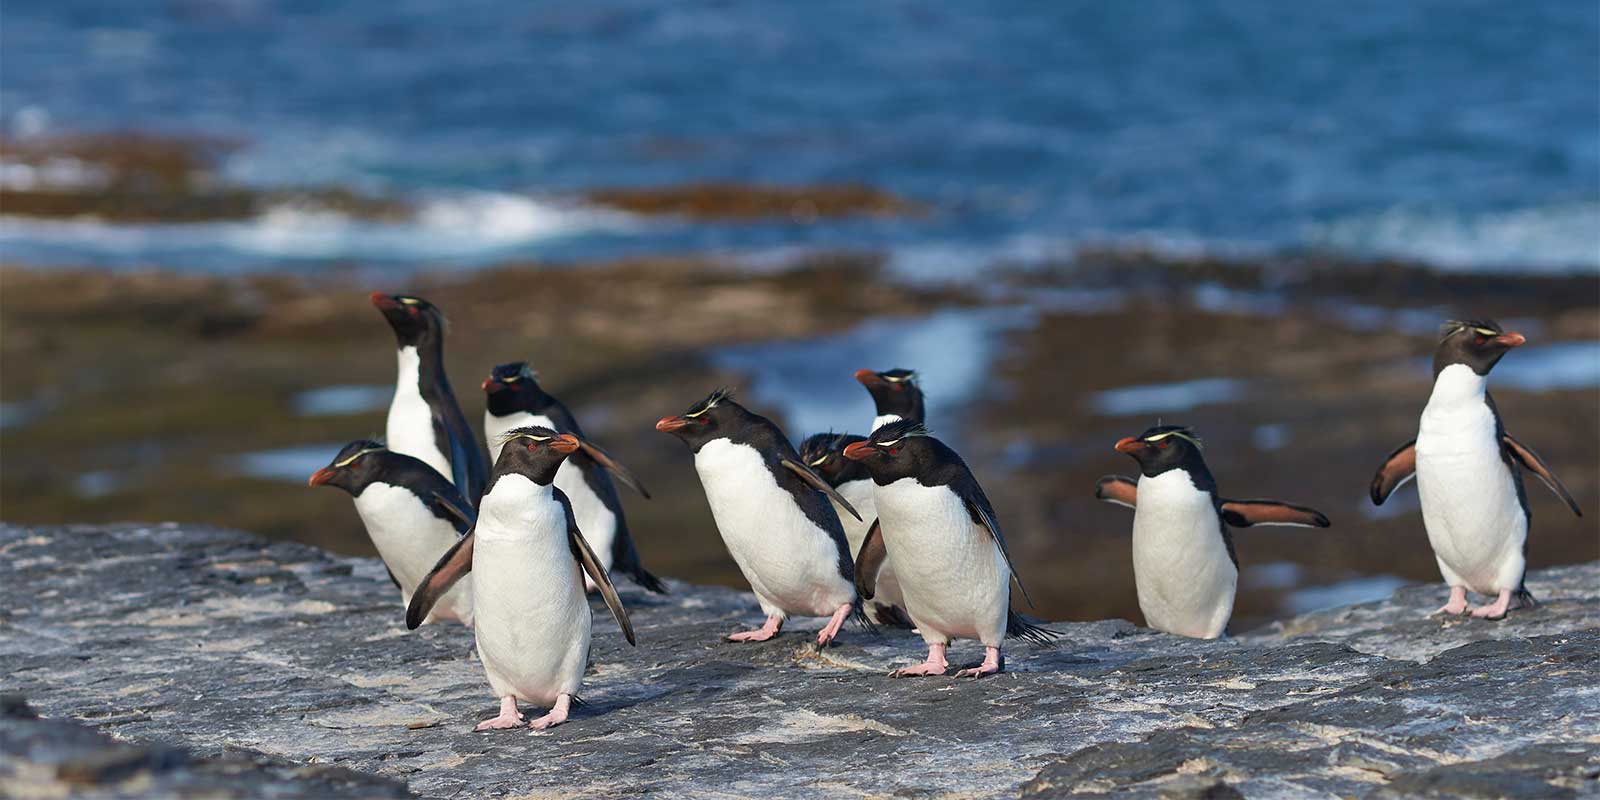 Southern rockhopper penguins on Bleaker Island, the Falkland Islands